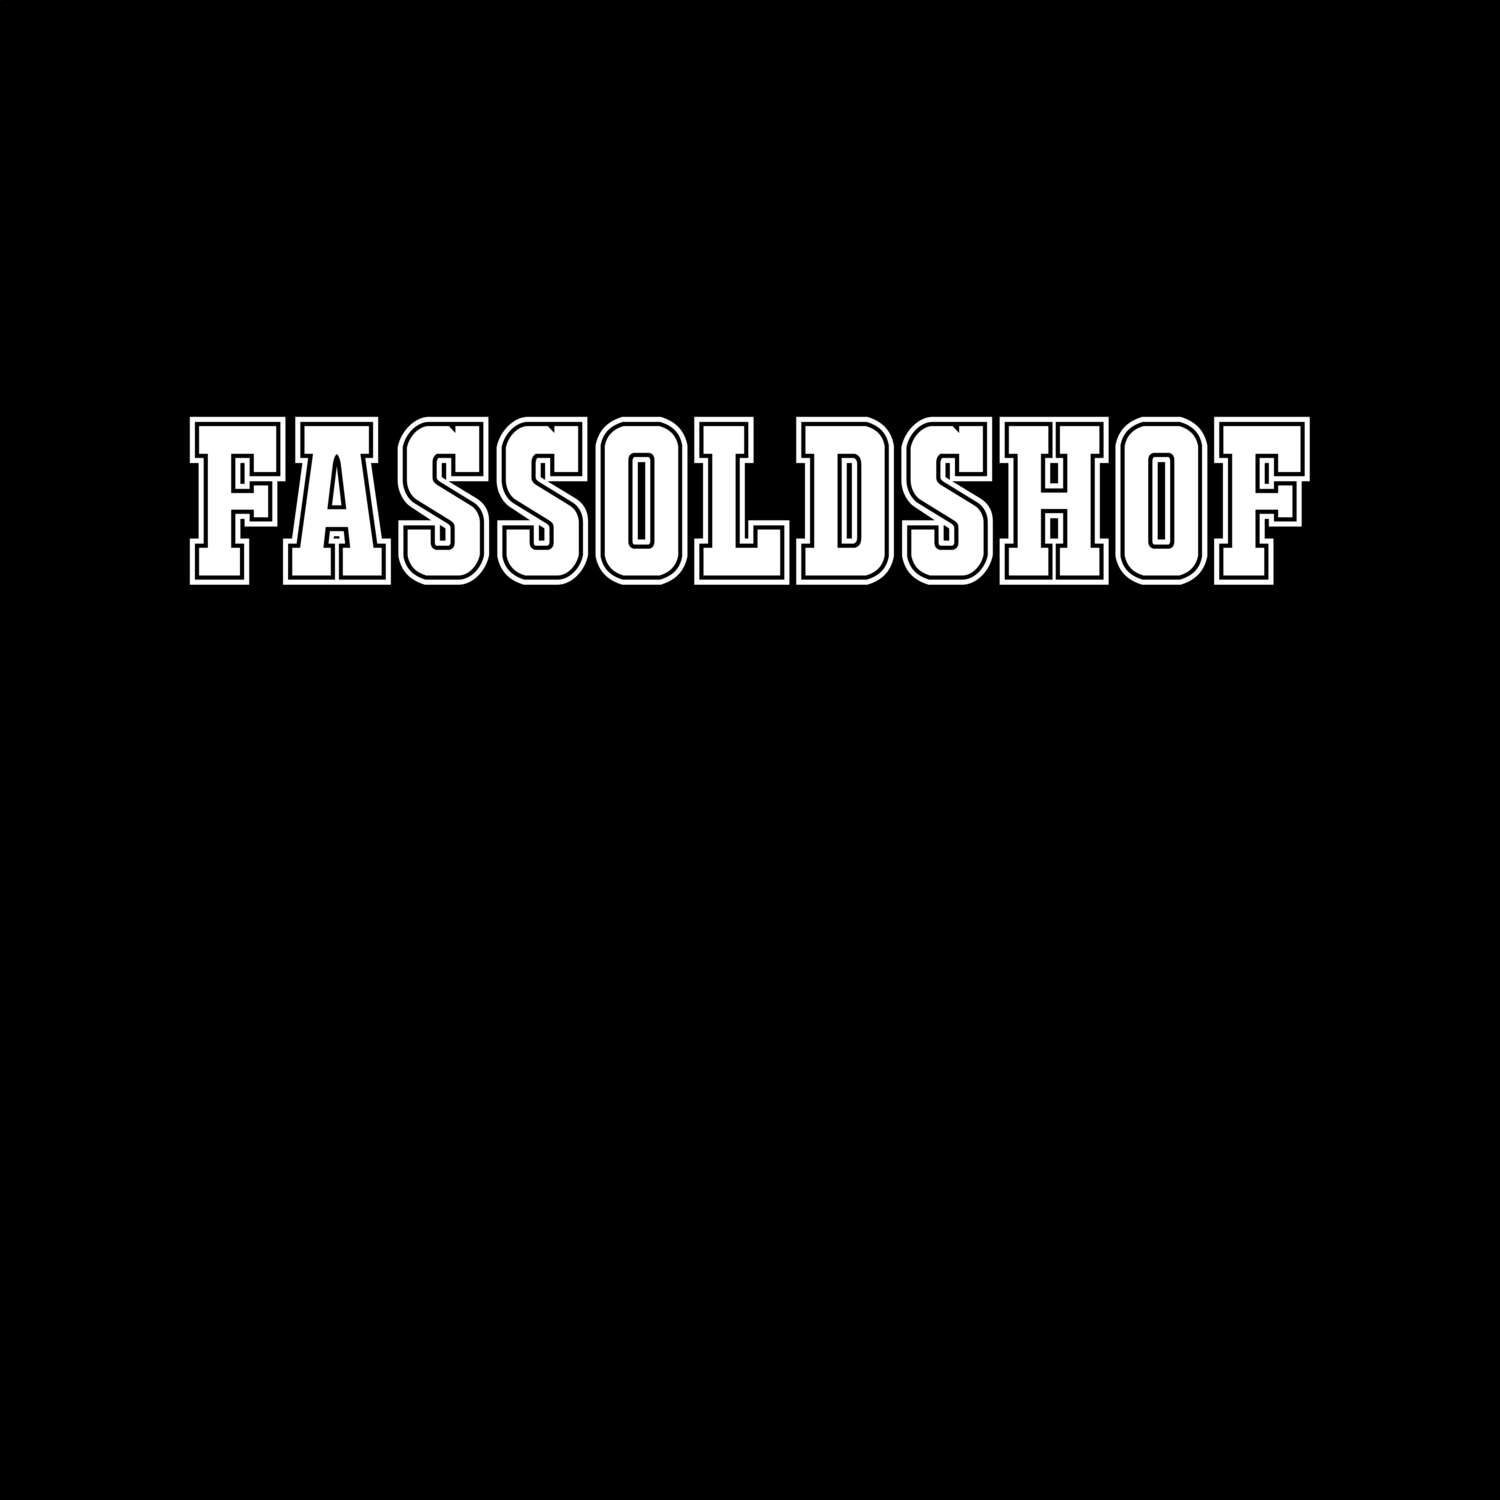 Fassoldshof T-Shirt »Classic«